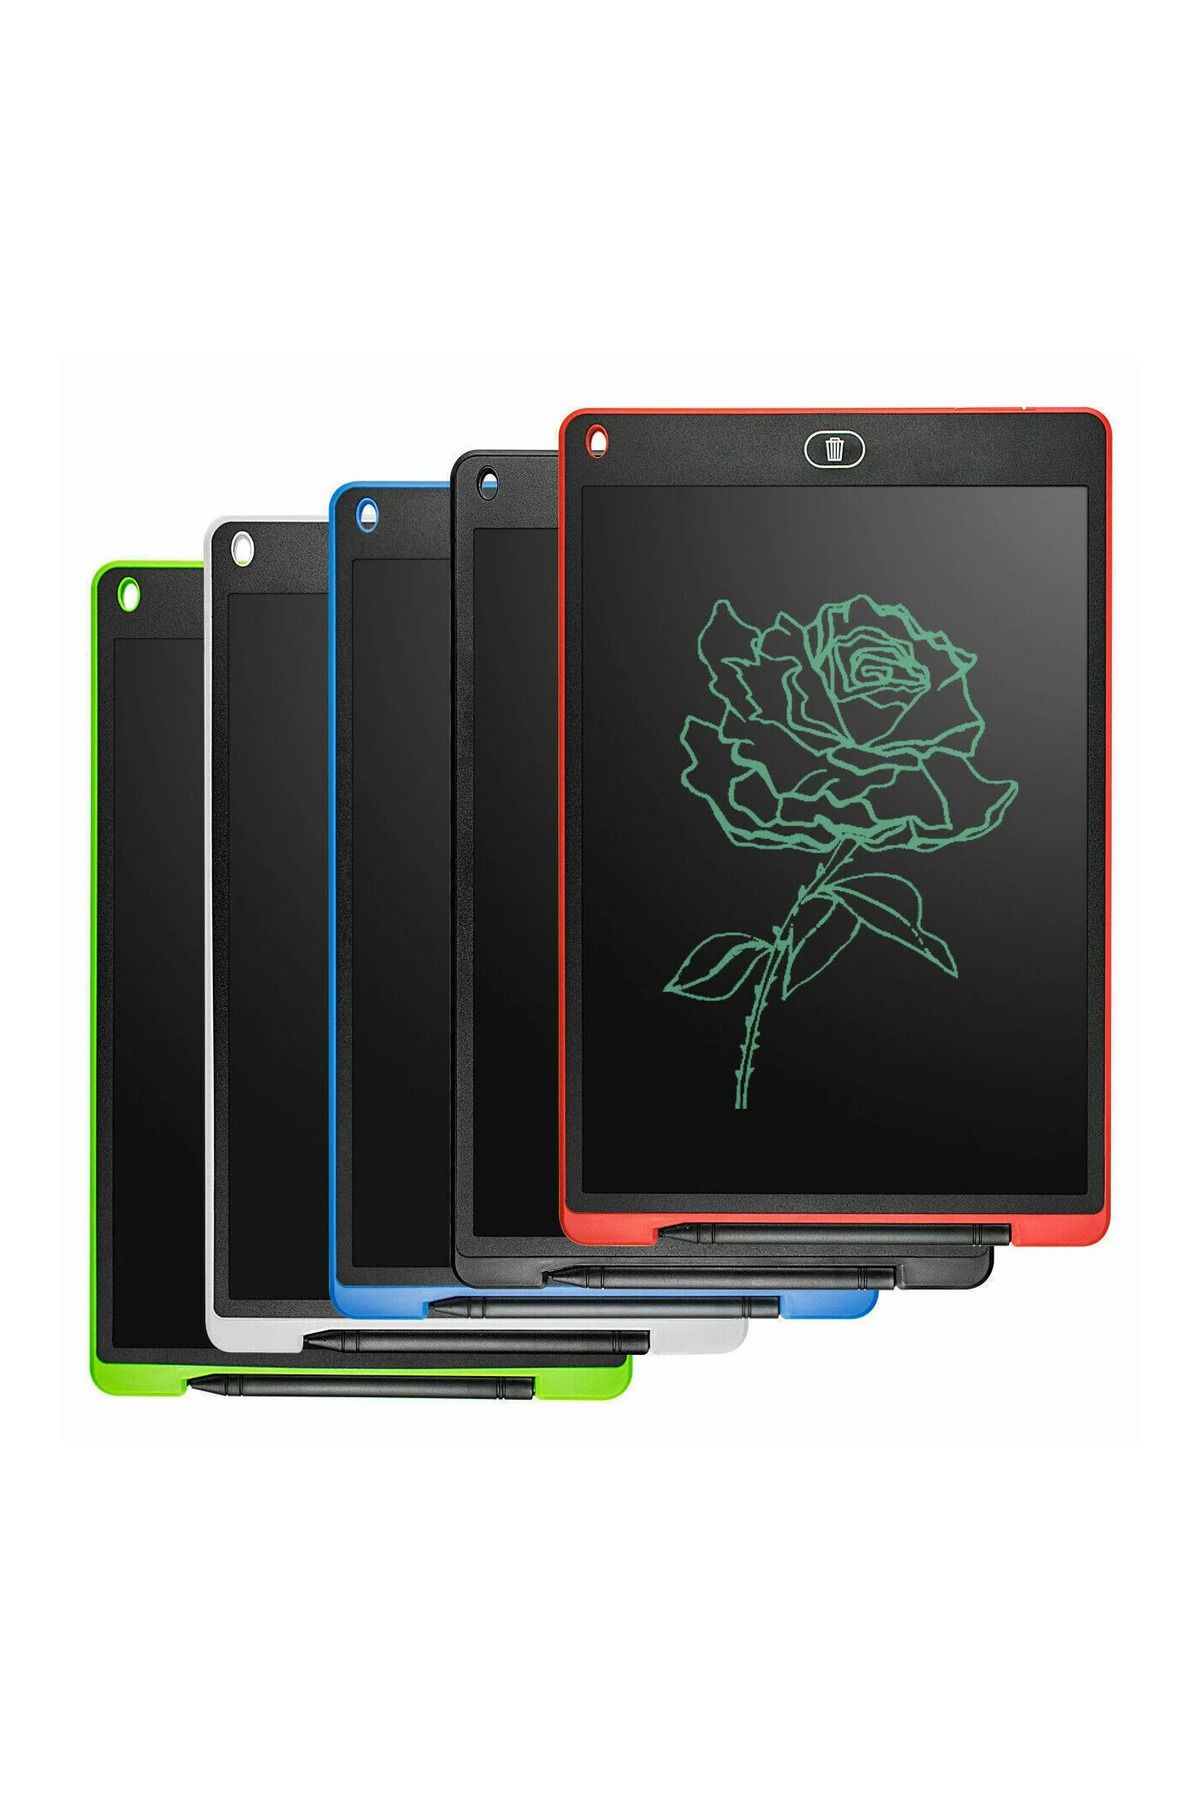 RED DEER Digital Çocuk Yazı Çizim Tableti Lcd 8.5 Inc Ekranlı Ve Bilgisayar Kalemli Grafik Eğitim Tableti